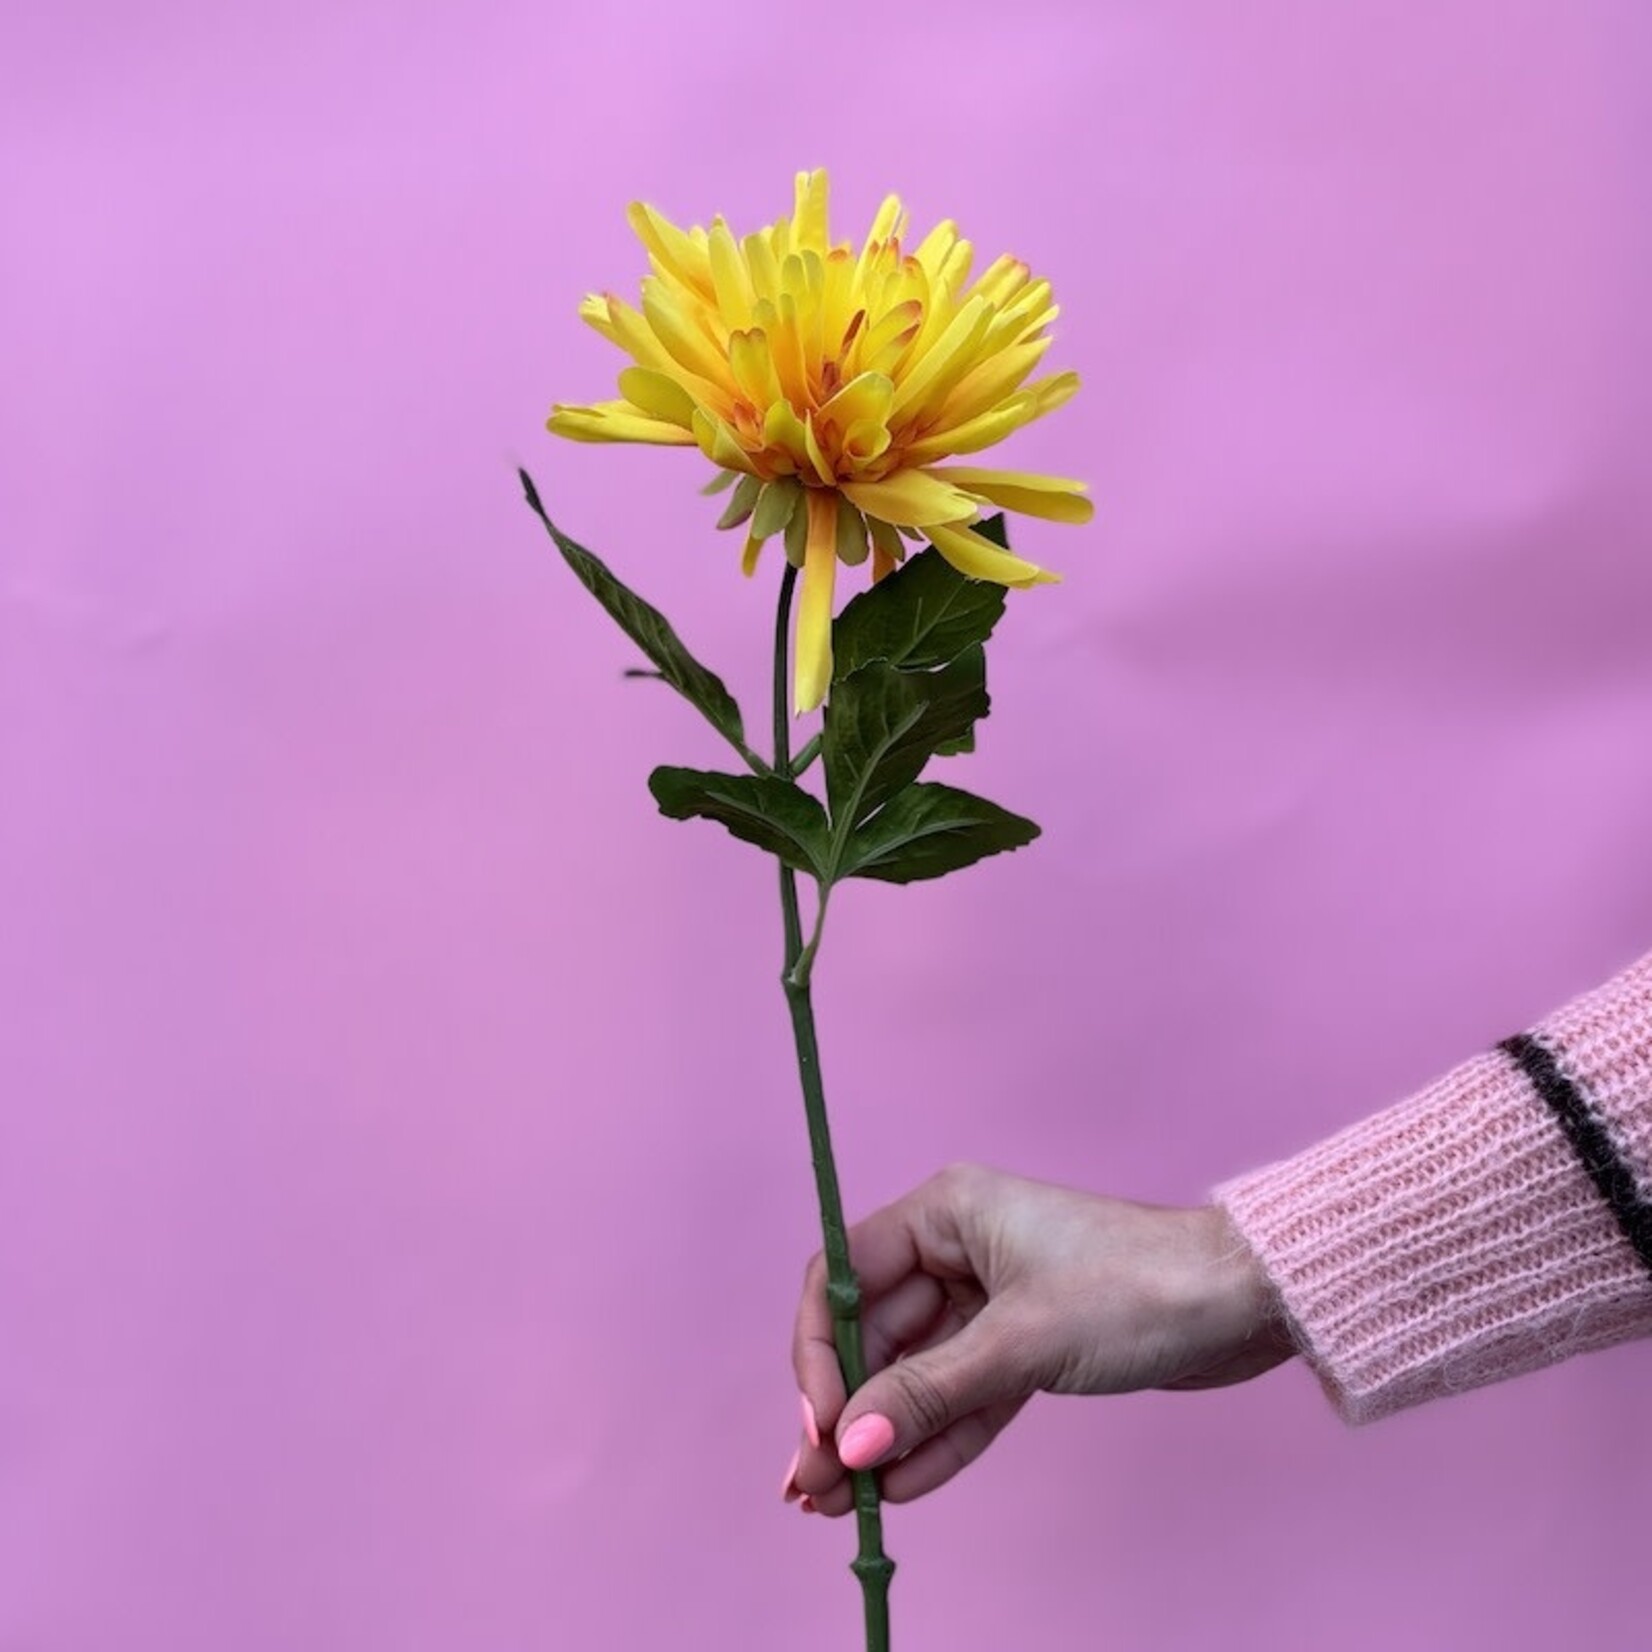 Zijden bloem - Dahlia geel - medium